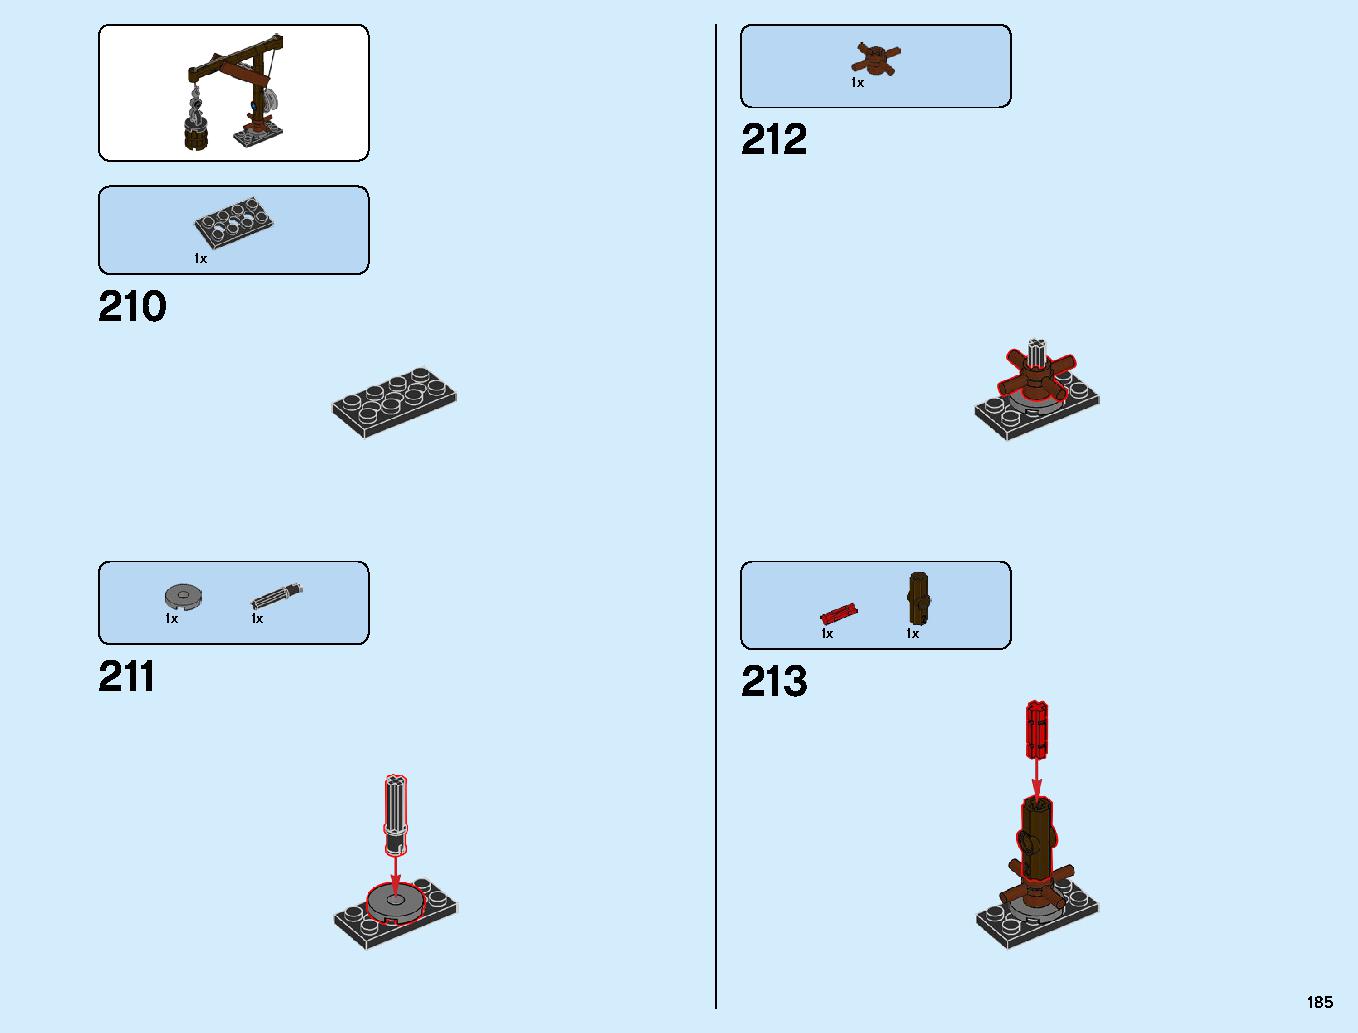 ニンジャゴーシティ・ポートパーク 70657 レゴの商品情報 レゴの説明書・組立方法 185 page